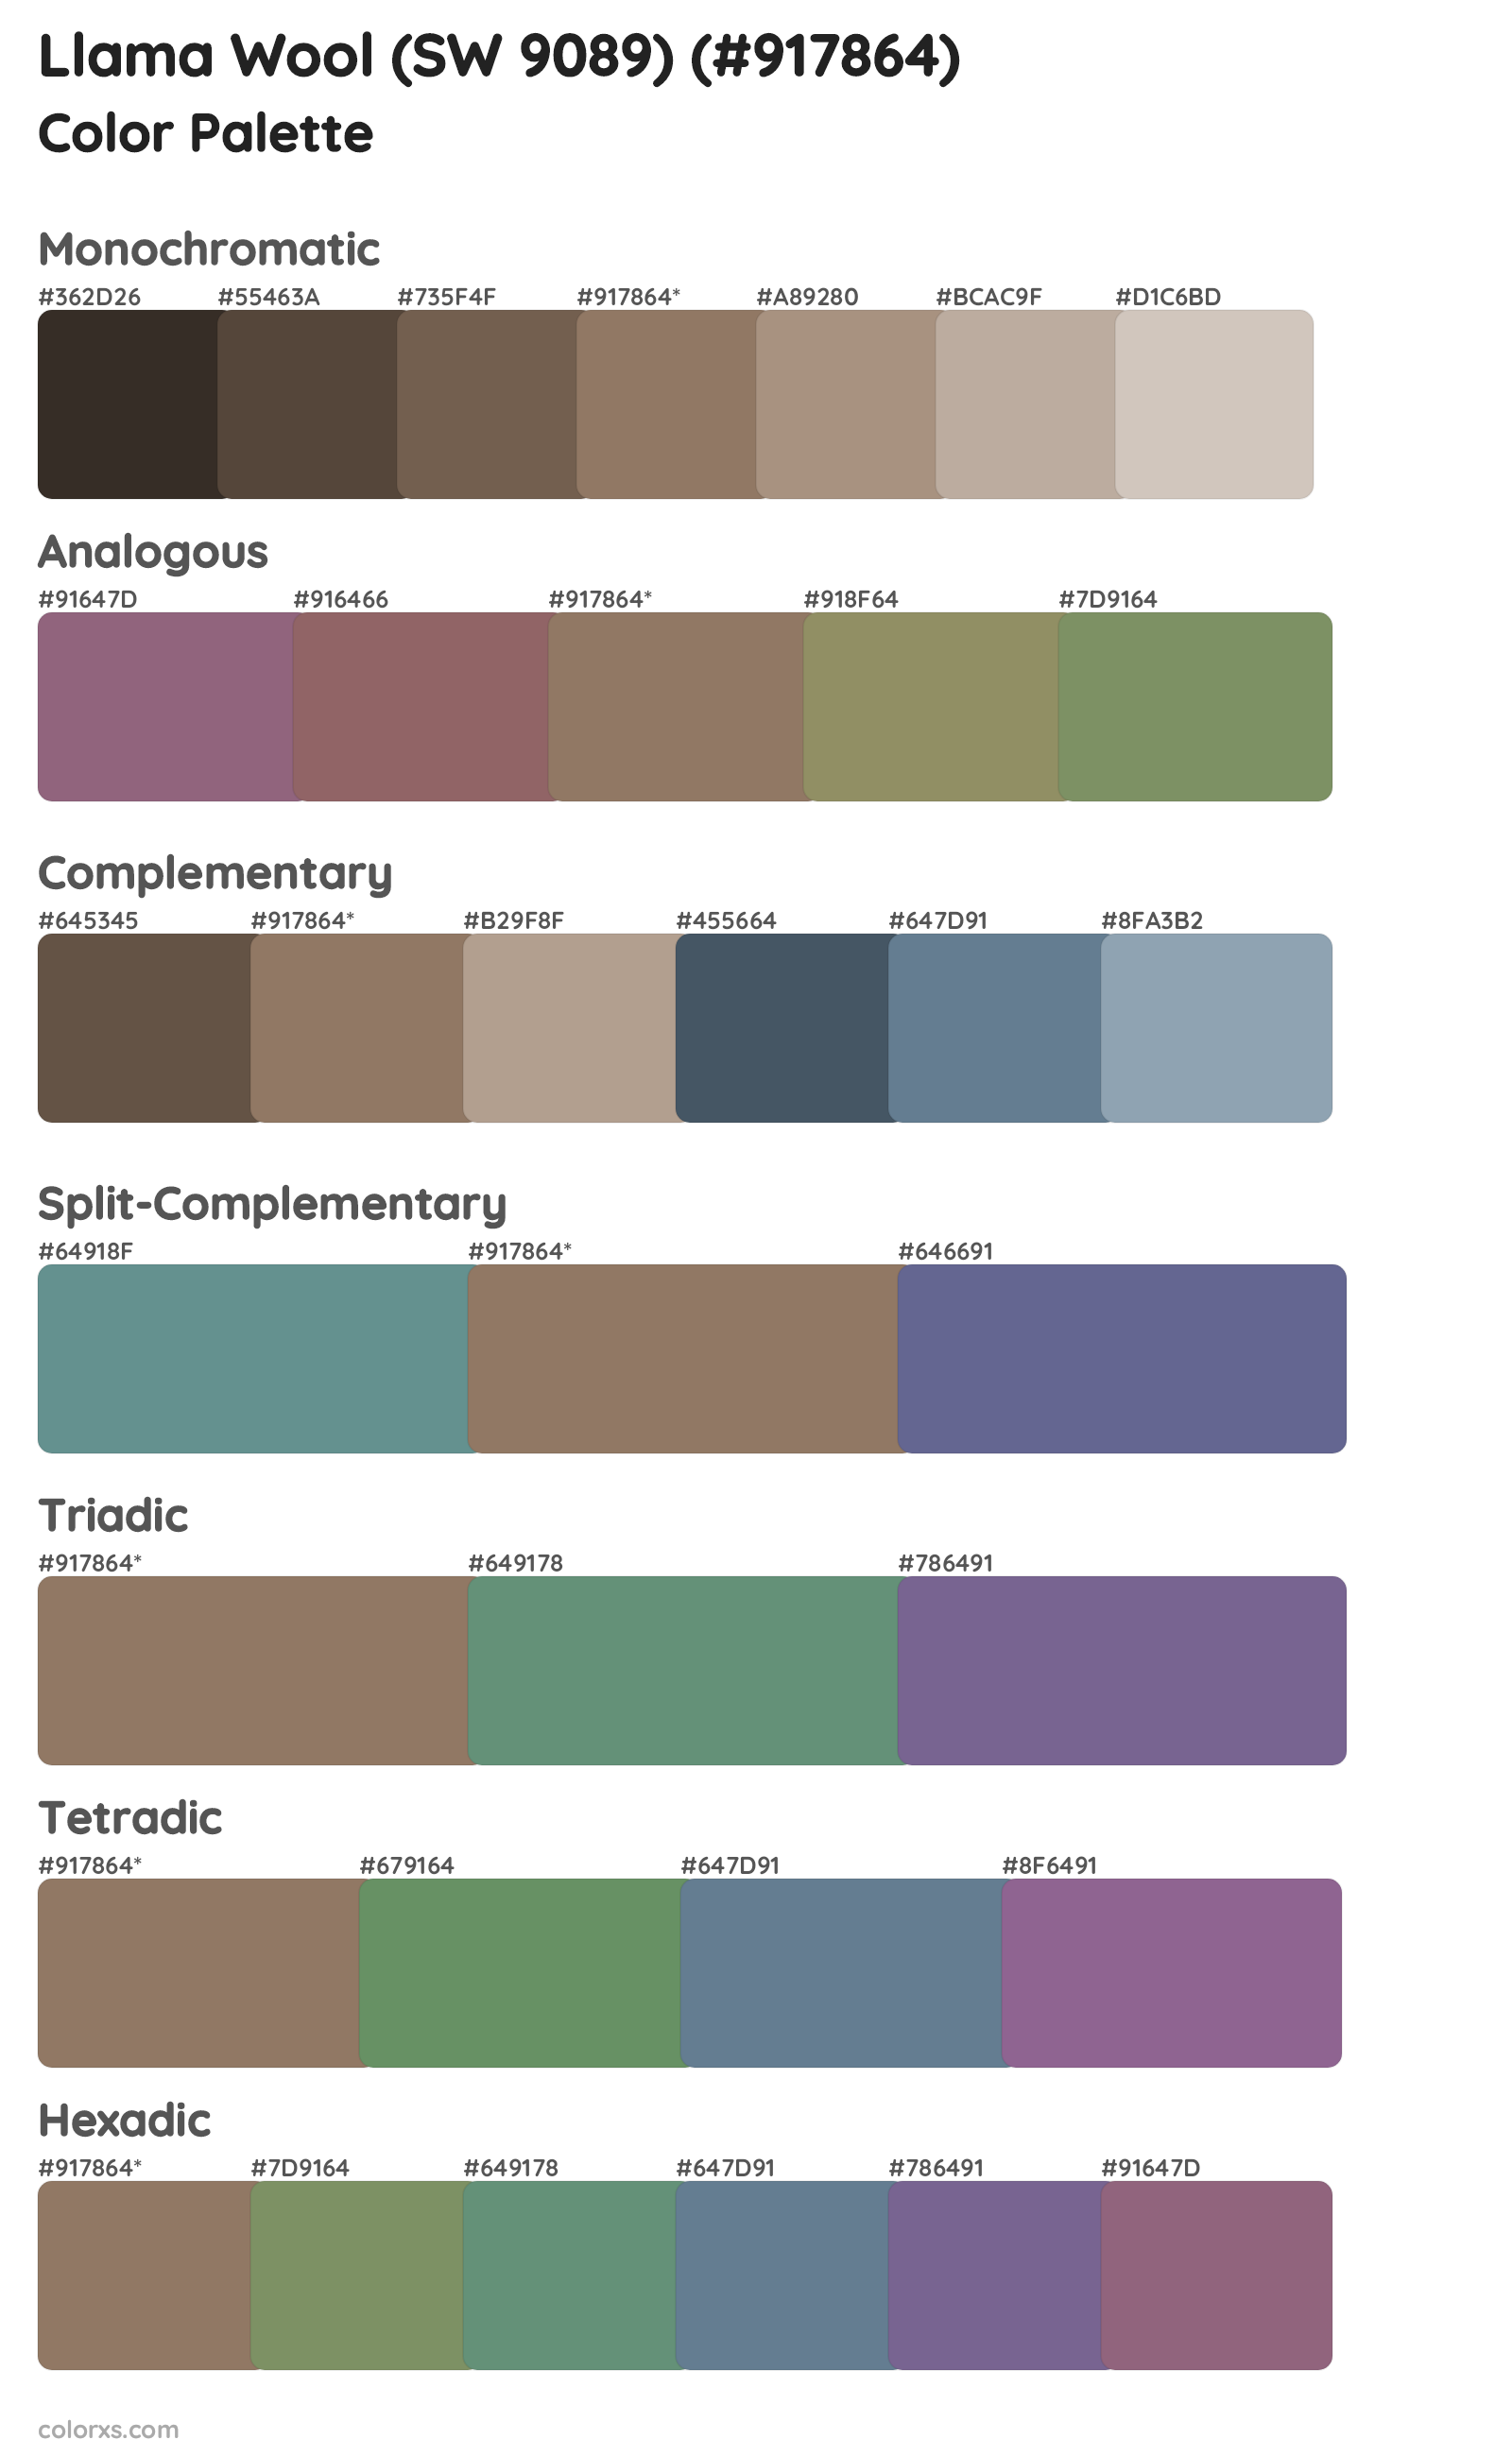 Llama Wool (SW 9089) Color Scheme Palettes